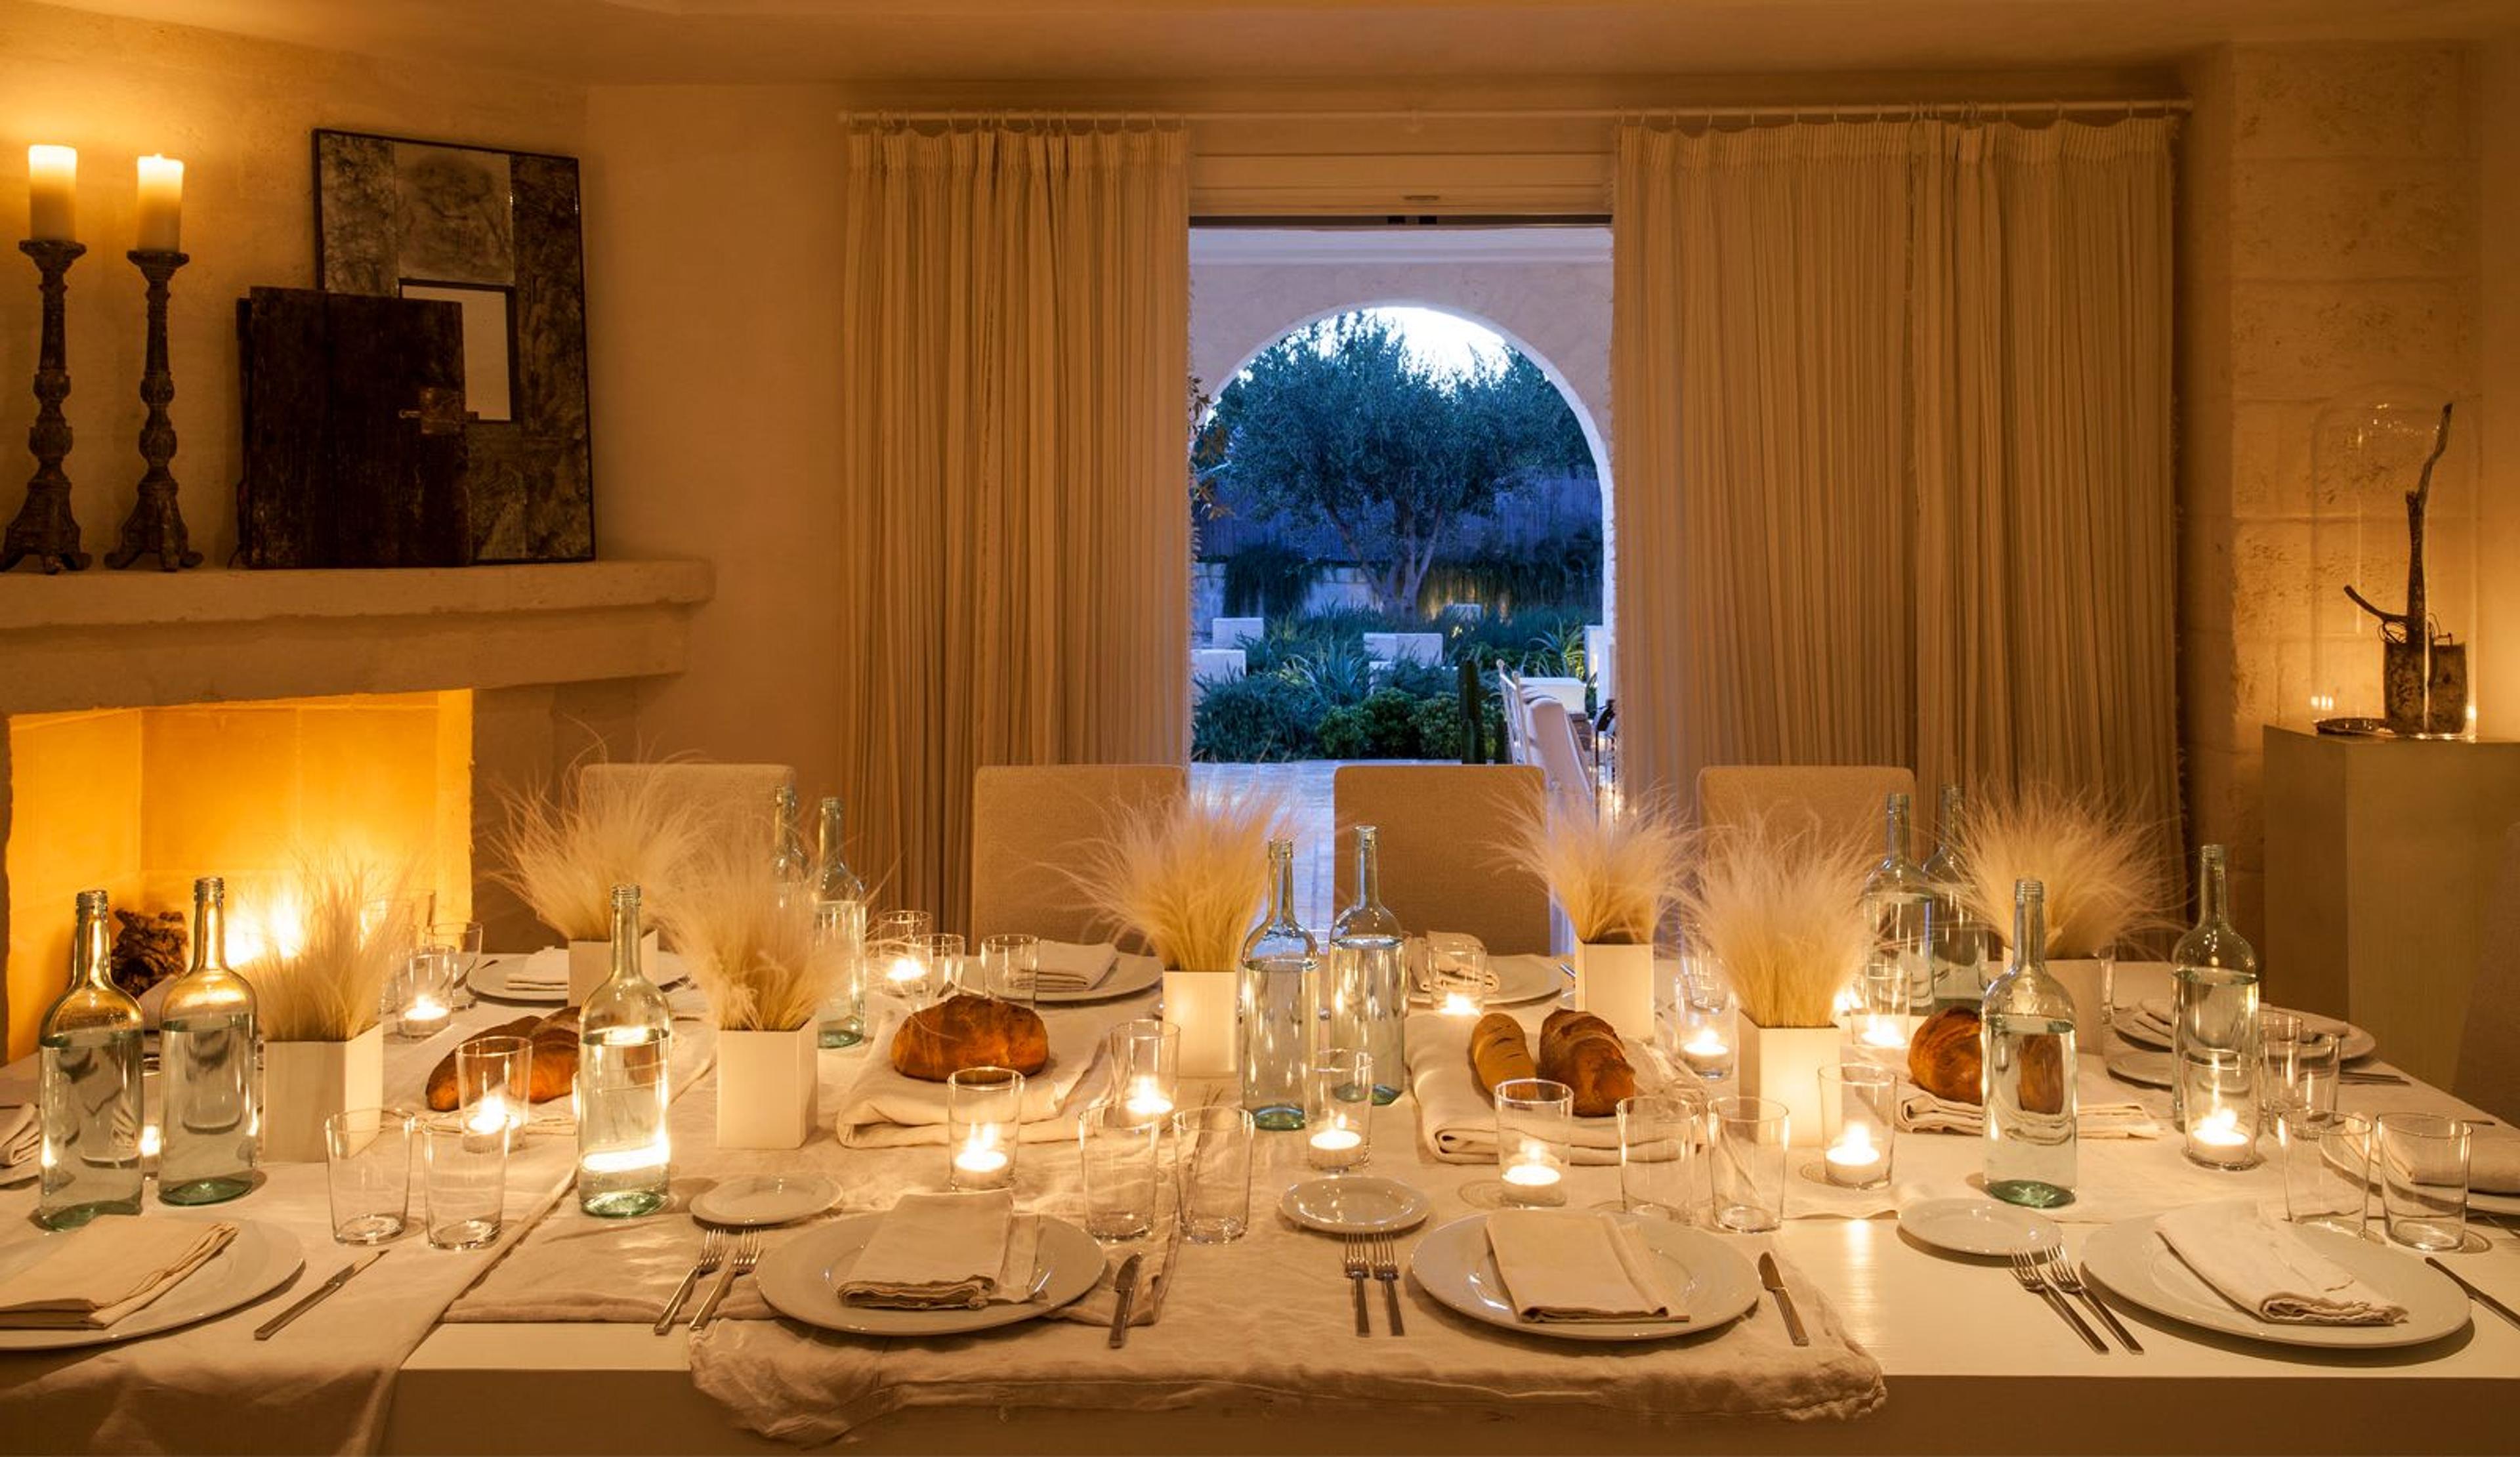 Dinner Area in a Villa inside Borgo Egnazia.